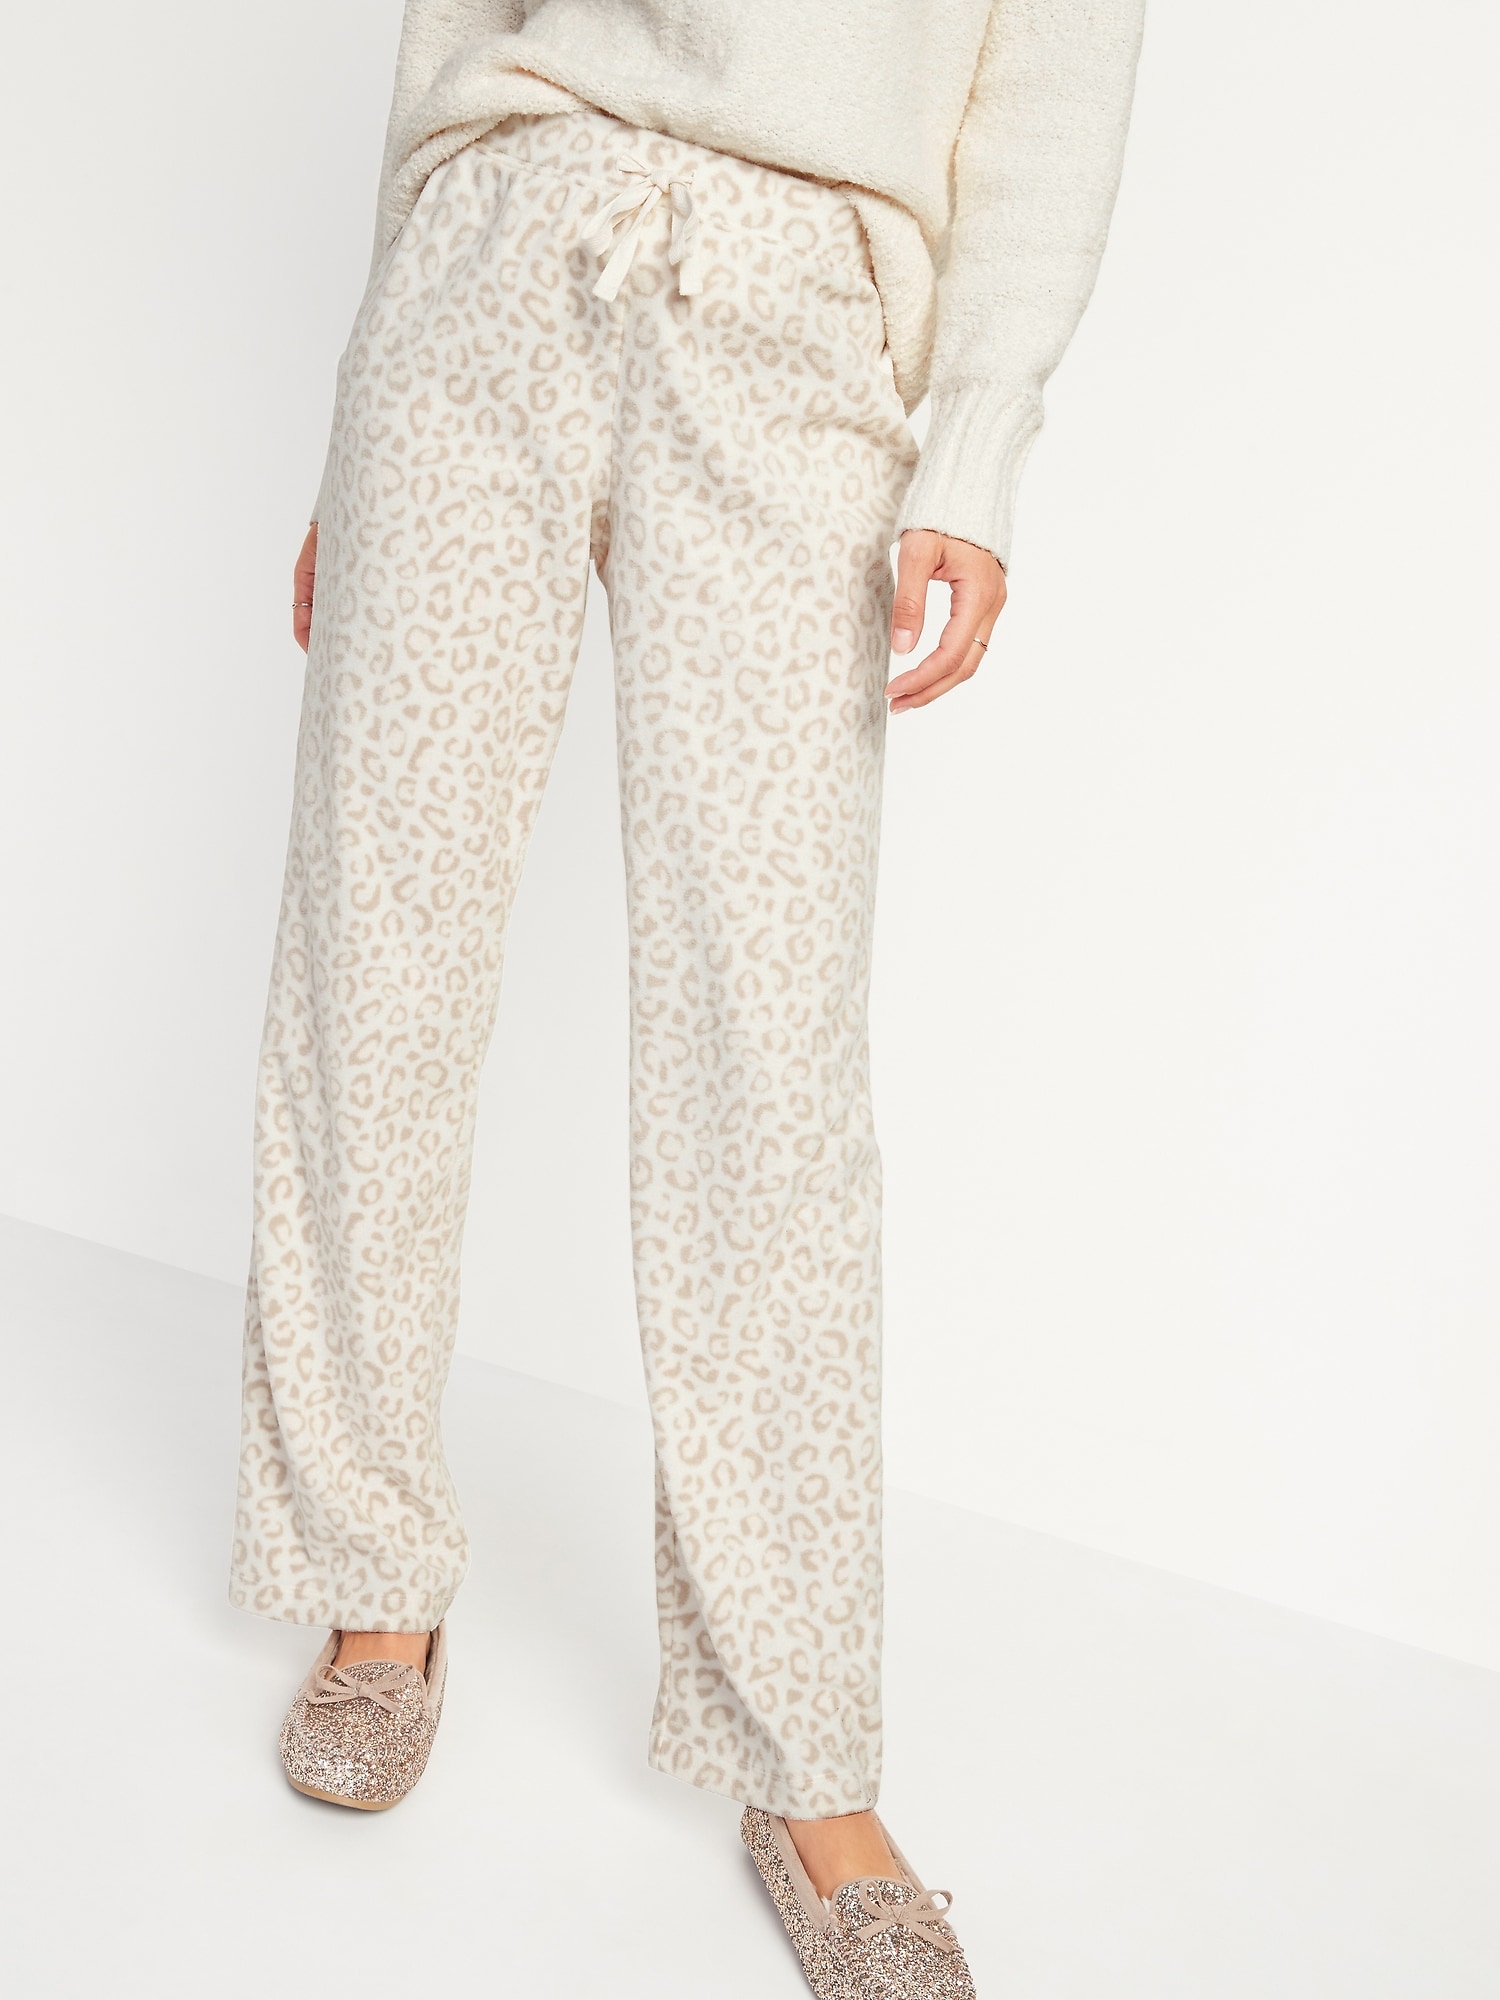 Old Navy Women's Fleece Pajama / Lounge Pants Beige Animal Print